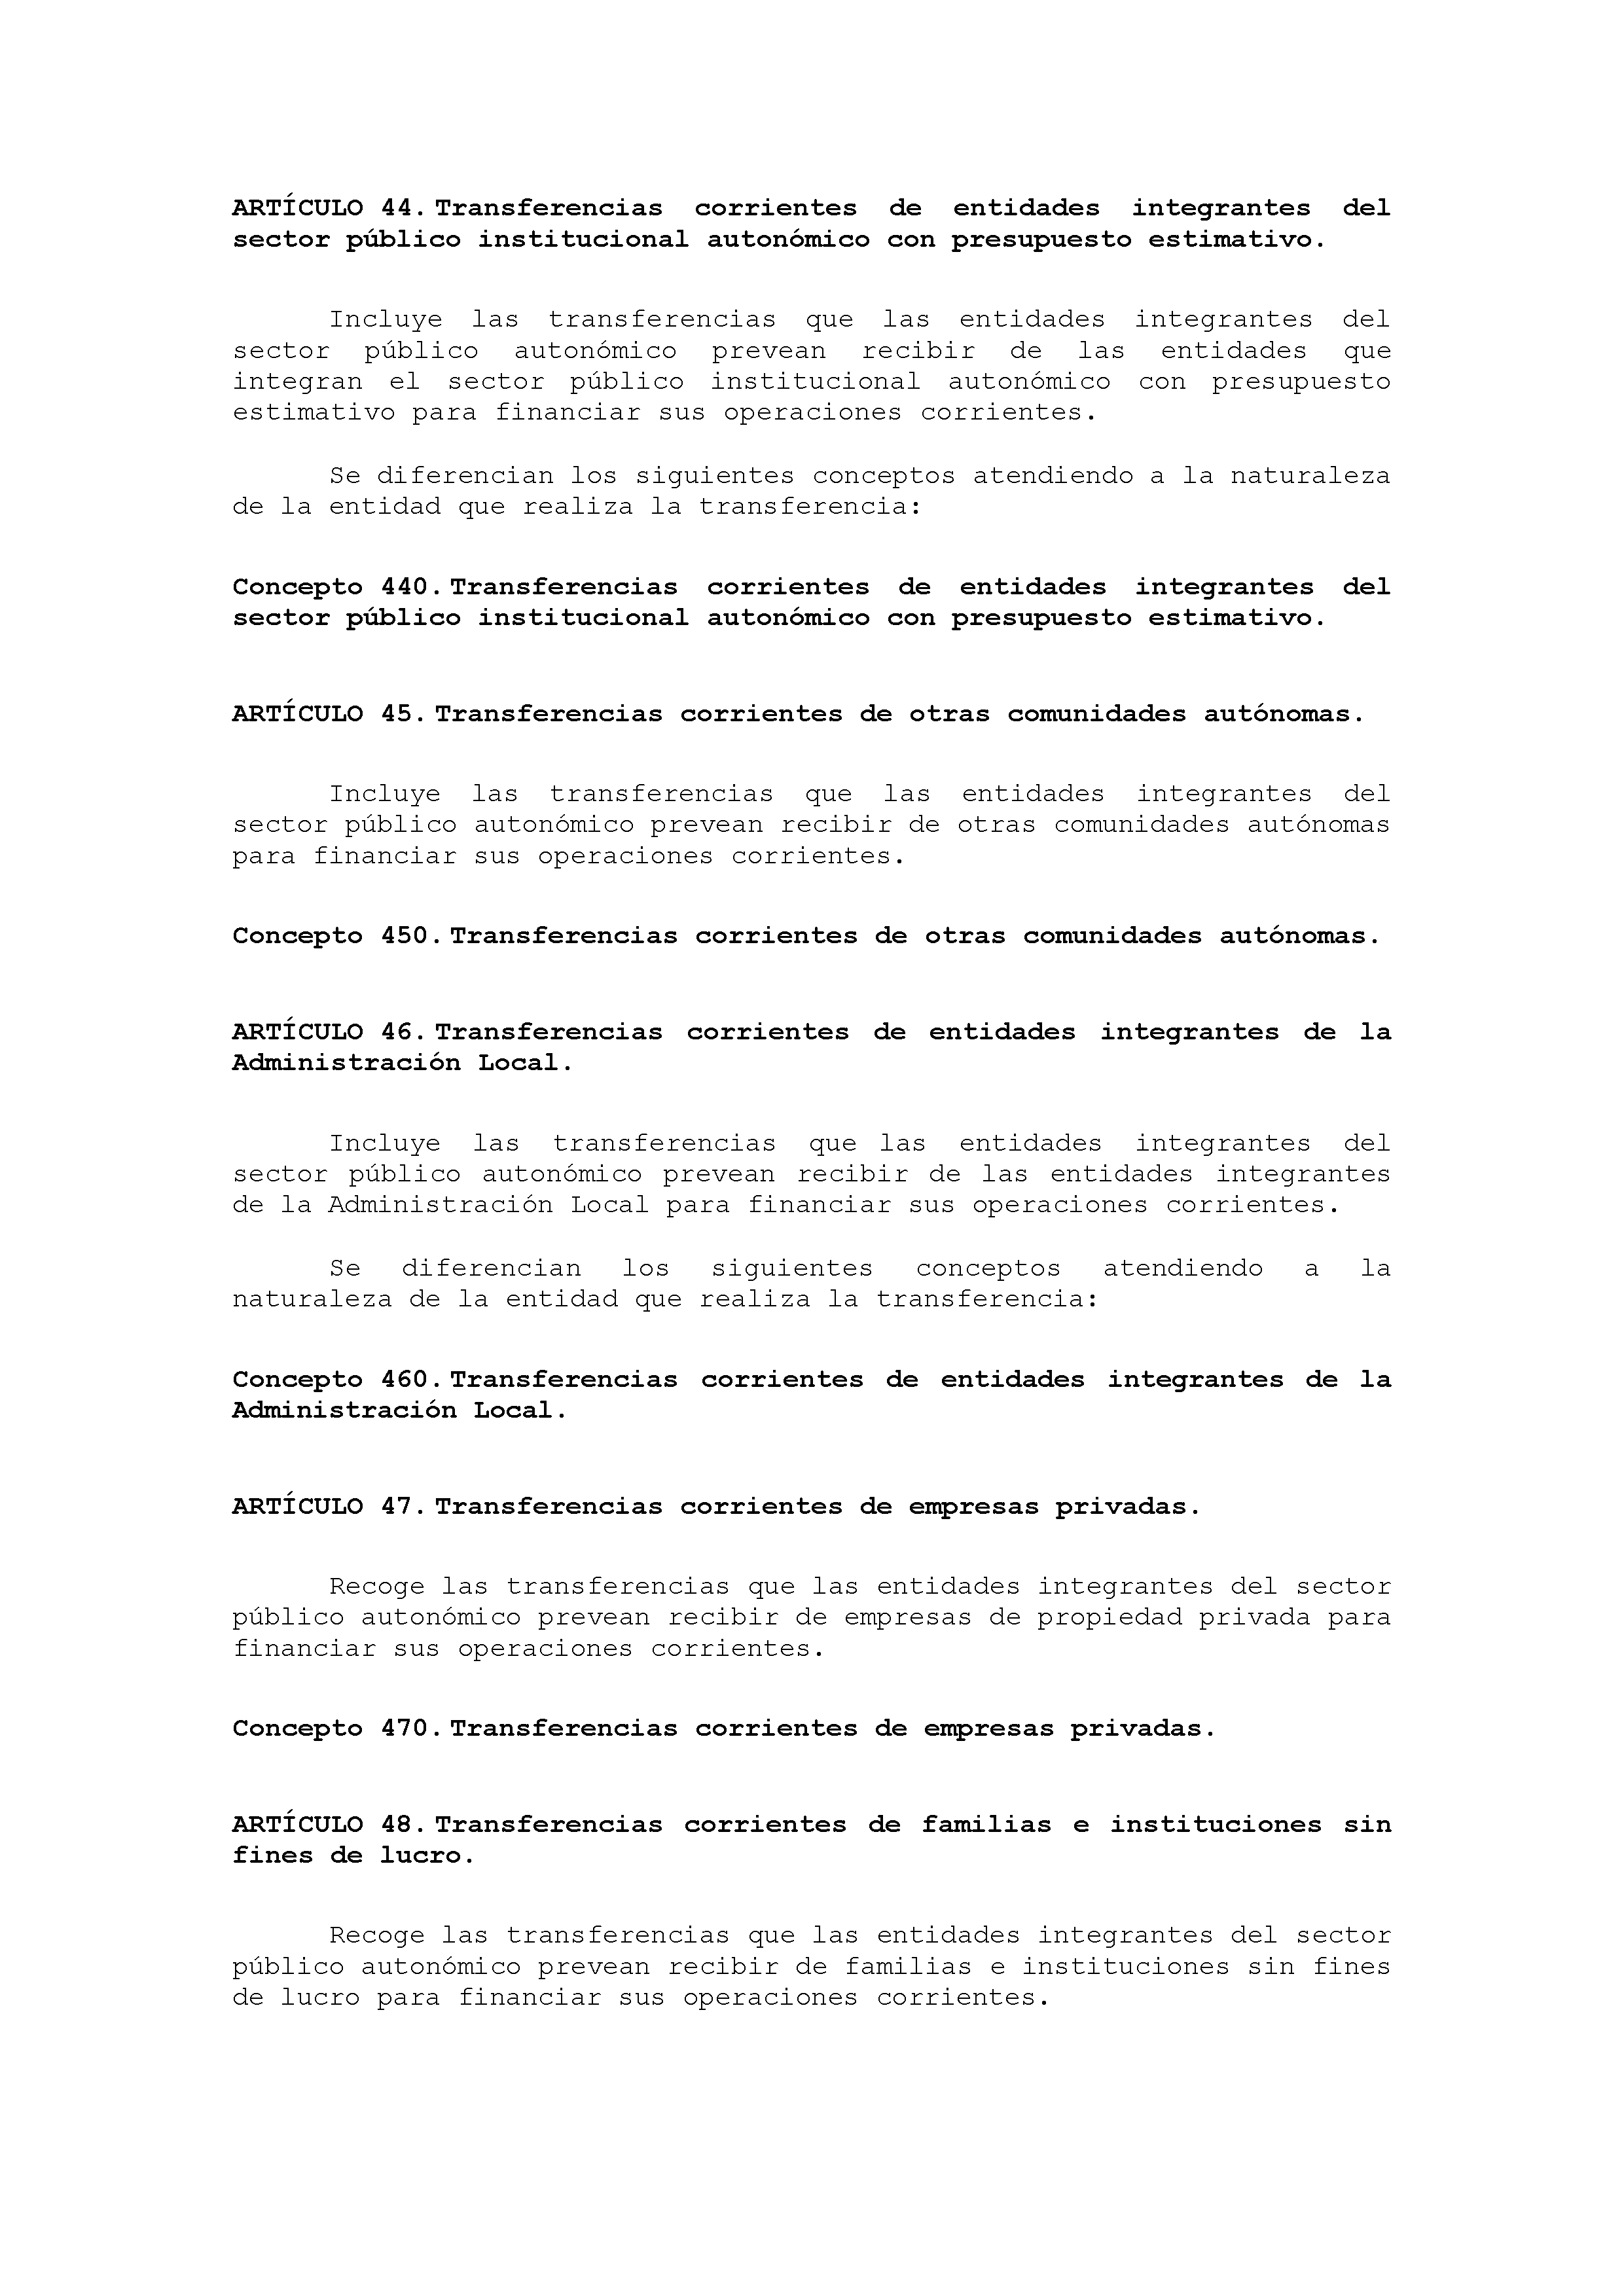 ANEXO VIII CÓDIGO DE LA CLASIFICACIÓN ECONÓMICA DE LOS INGRESOS PÚBLICOS Pag 13